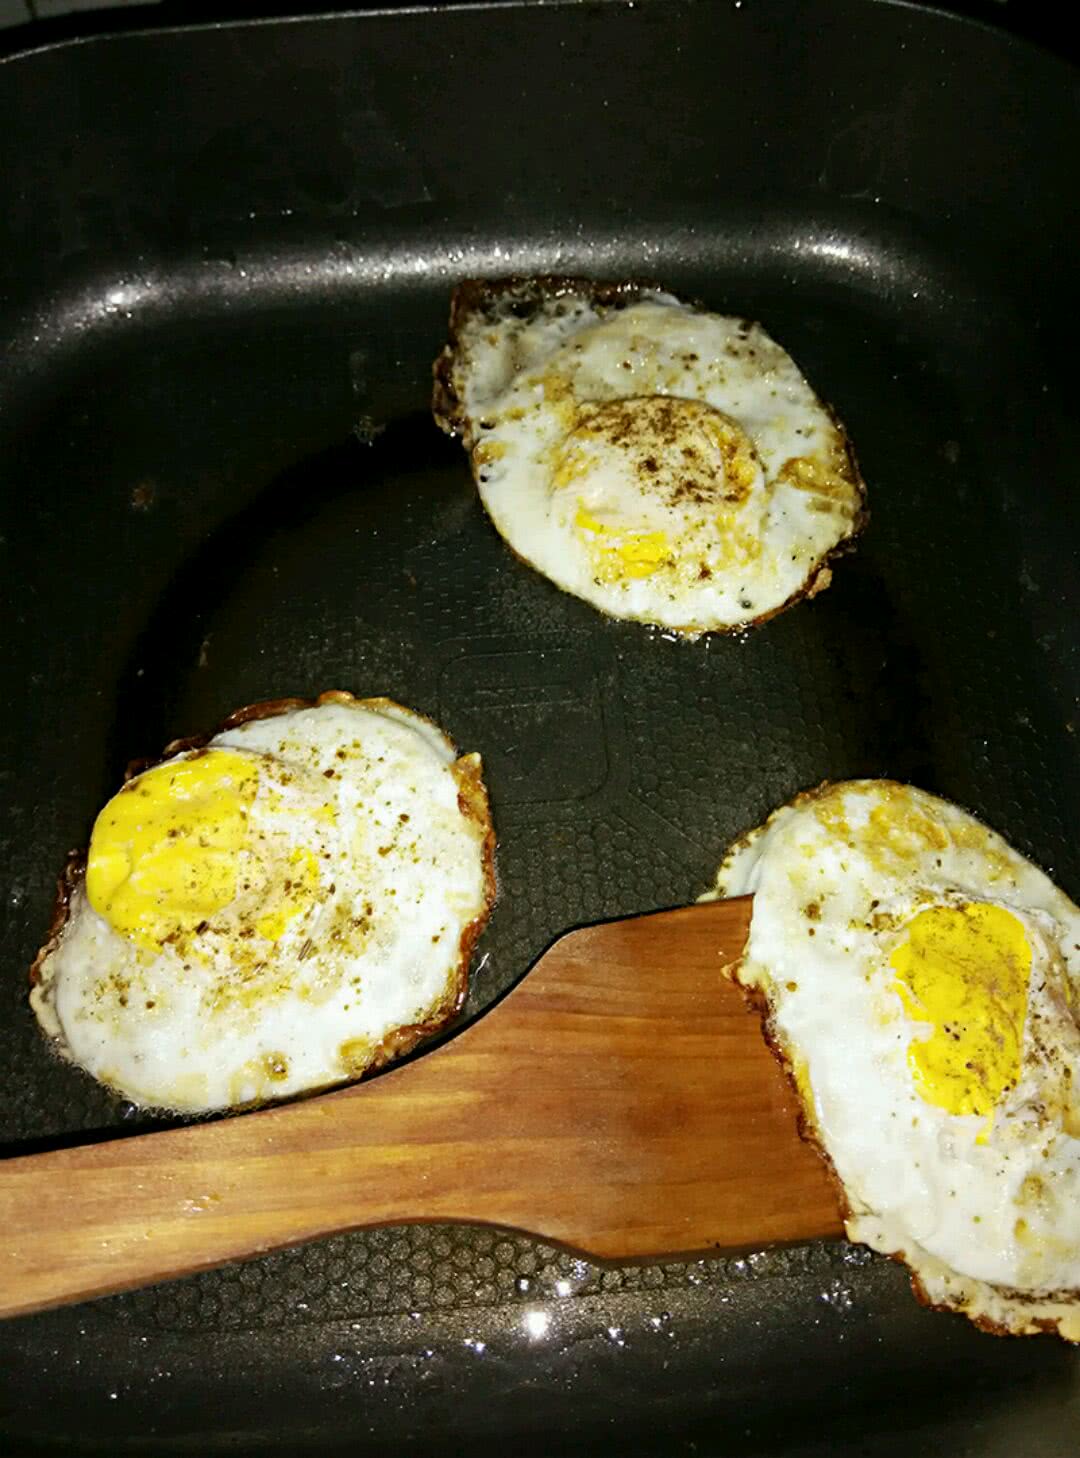 煎荷包蛋的做法 怎么煎荷包蛋不散_华夏智能网